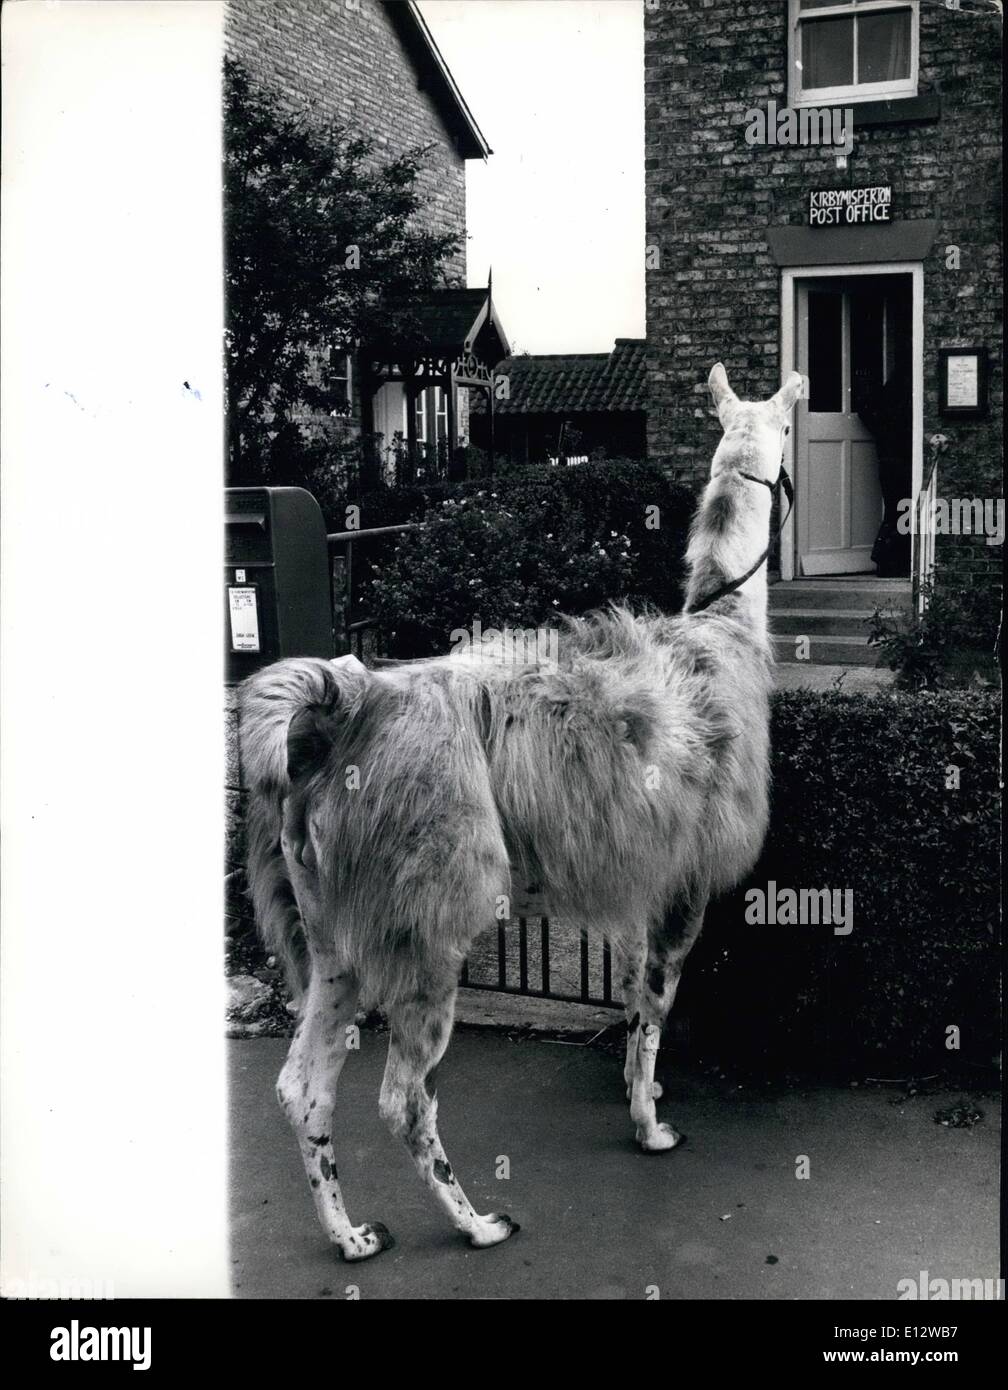 26. Februar 2012 - Julie Fahrten zu den Millage-mit Lamas. Trab entlang der Gassen von Melton, verursacht Yorkshire auf ihr Reittier, 15 Jahre alten Julie Cook in der Regel ziemlich rühren für sie, nicht auf einem Pferd, sondern auf ein Lama montiert ist! Julies Vater kaufte Liberty, das Lama für 50 aus dem nahe gelegenen Flamingo Park Zoo als Haustier - und versprach ihm, Julie, wenn sie ihn, in brechen könnte Stockfoto